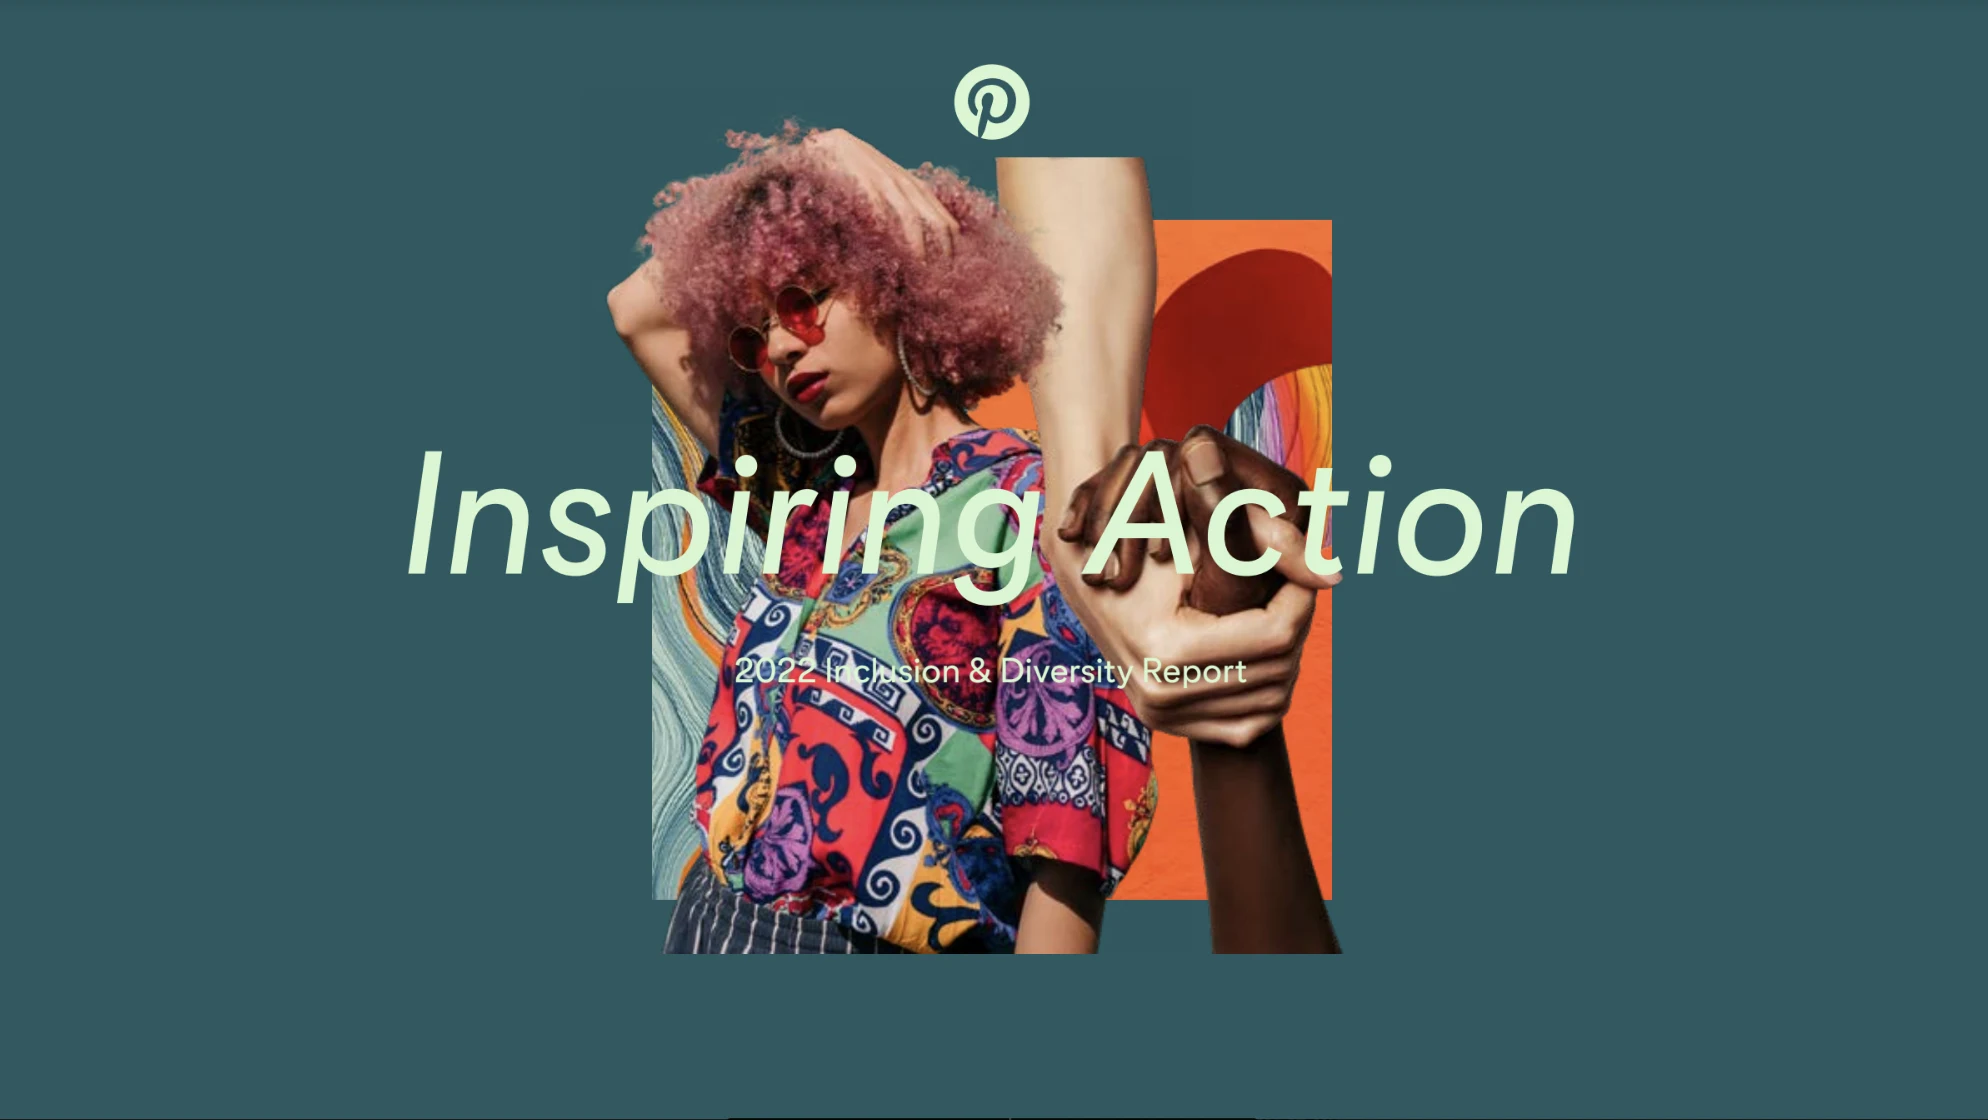 Die Worte „Inspiring Action“ werden über einer Collage von Bildern angezeigt, die von Pinterest inspirierte Mode-, Beauty-, Food- und Lifestyle-Trends zeigen